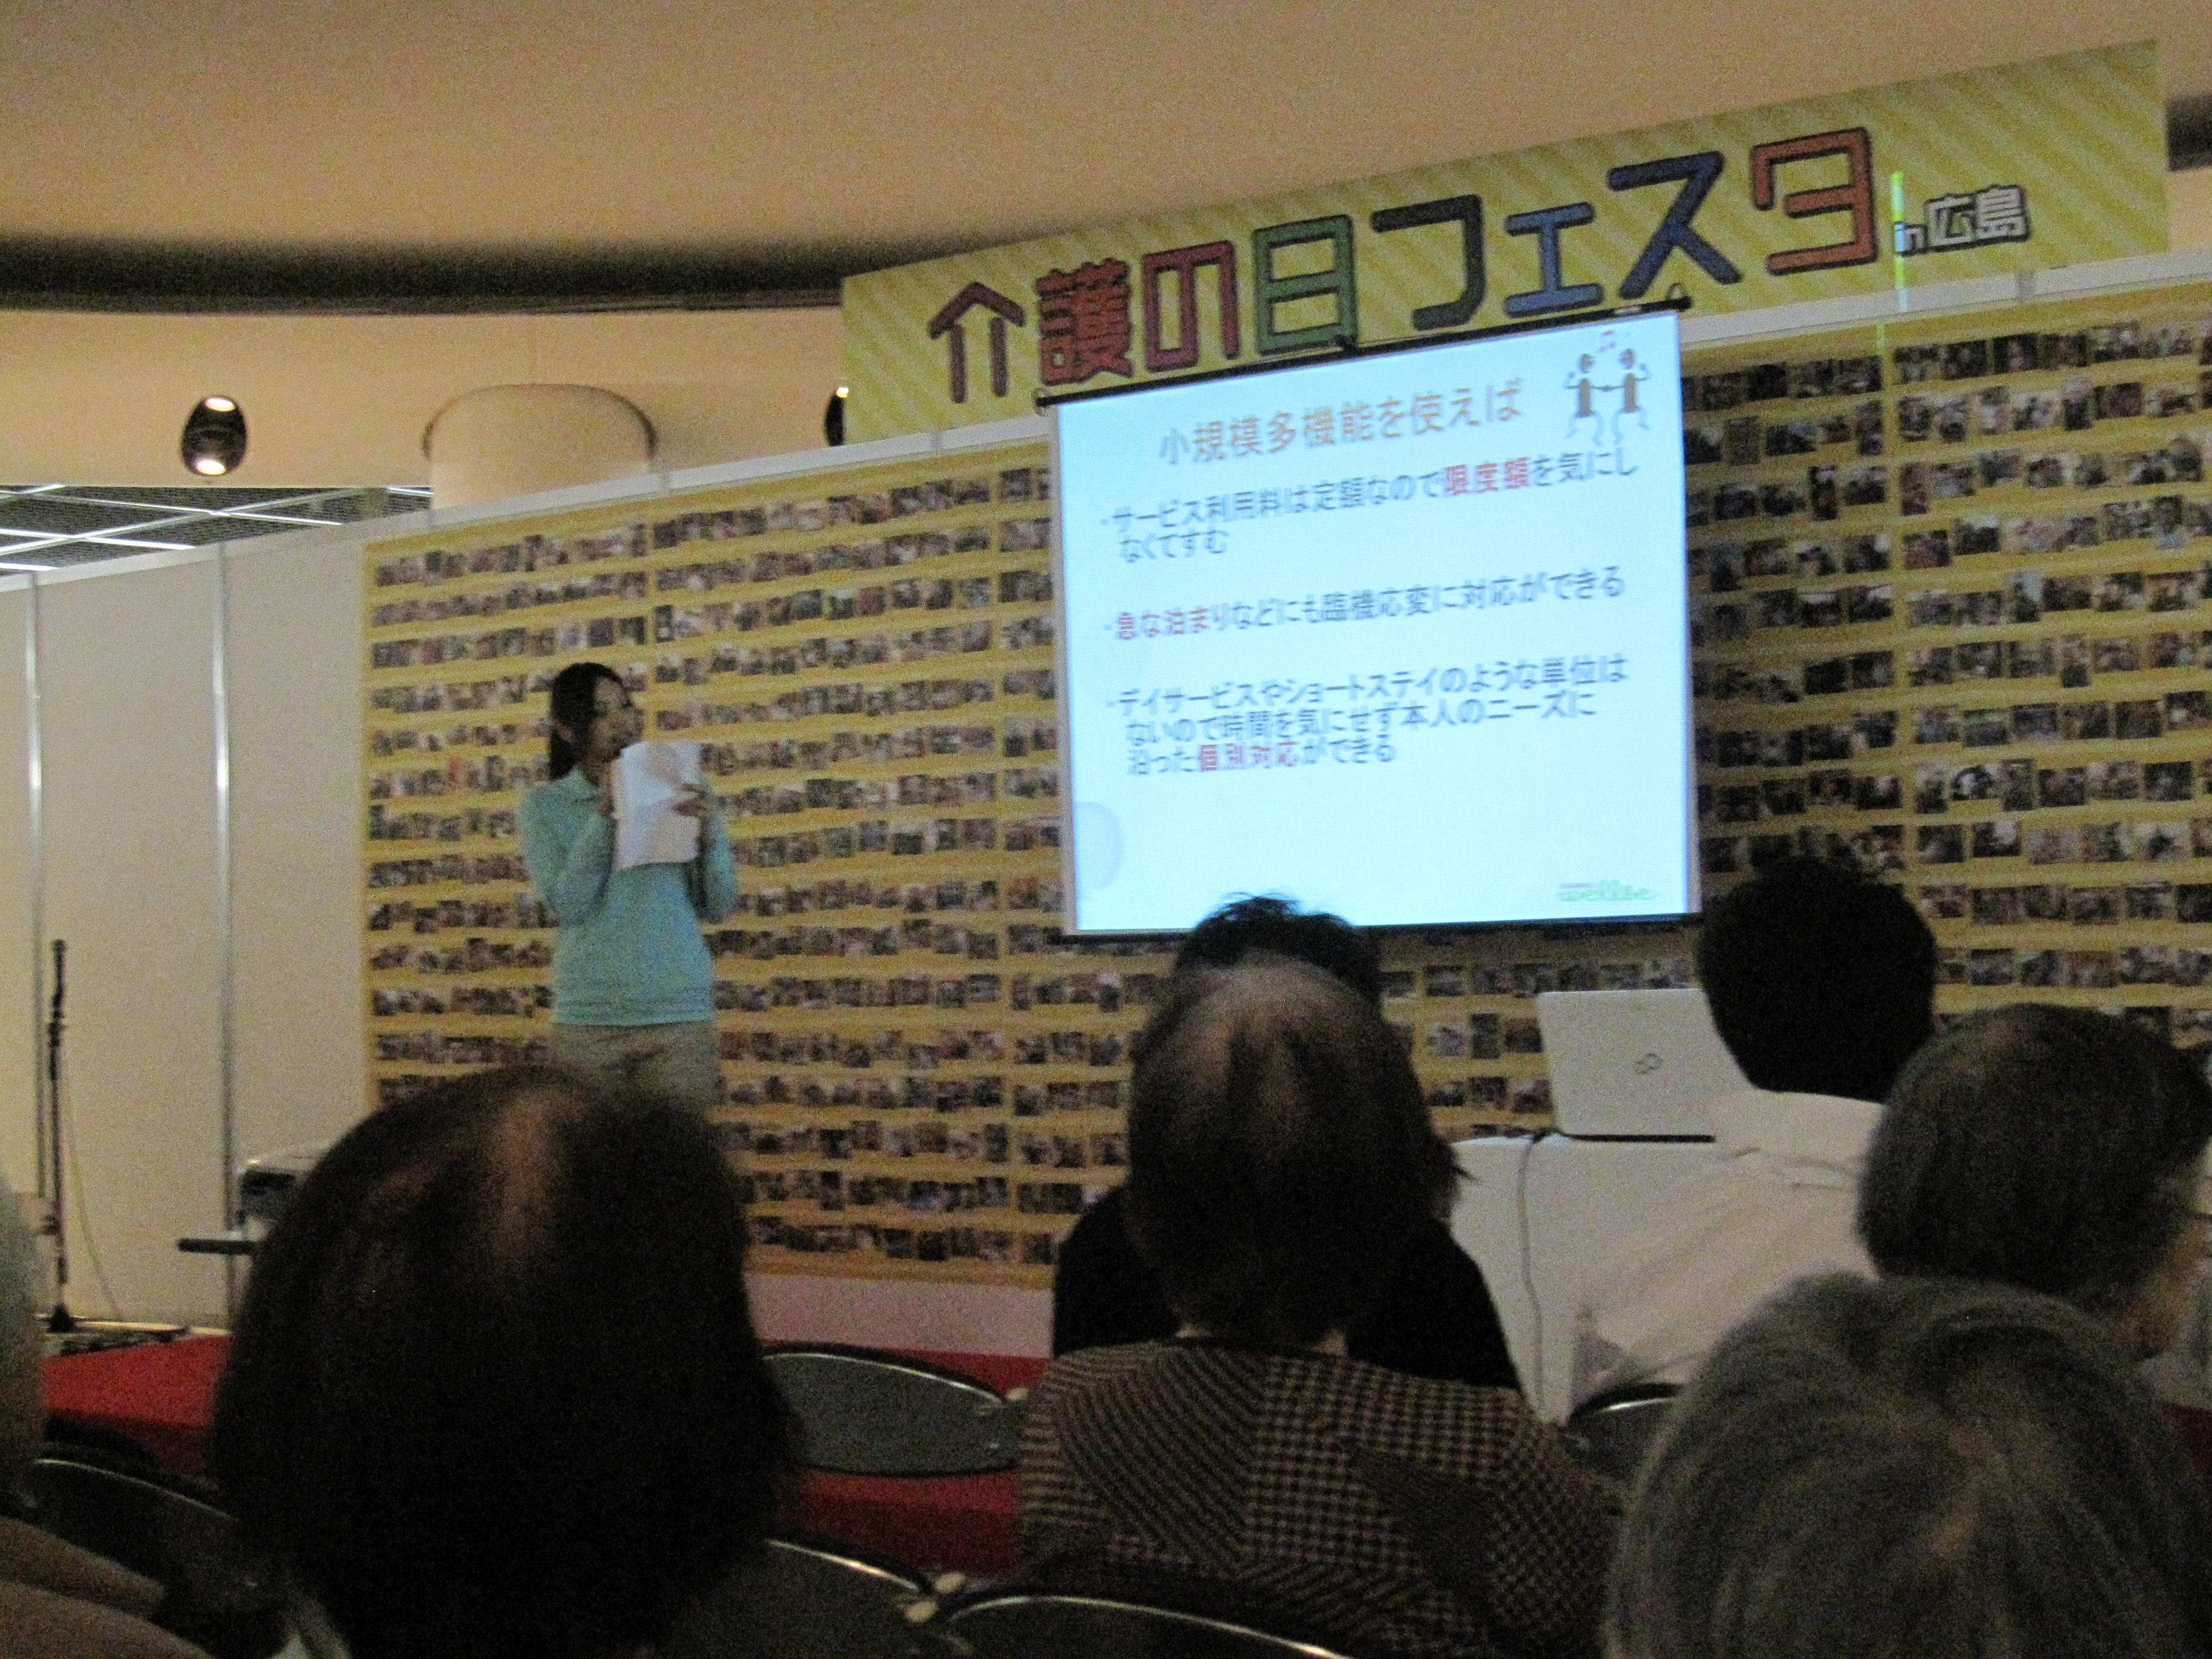 「介護の日フェスタｉｎ広島」が開催されました。